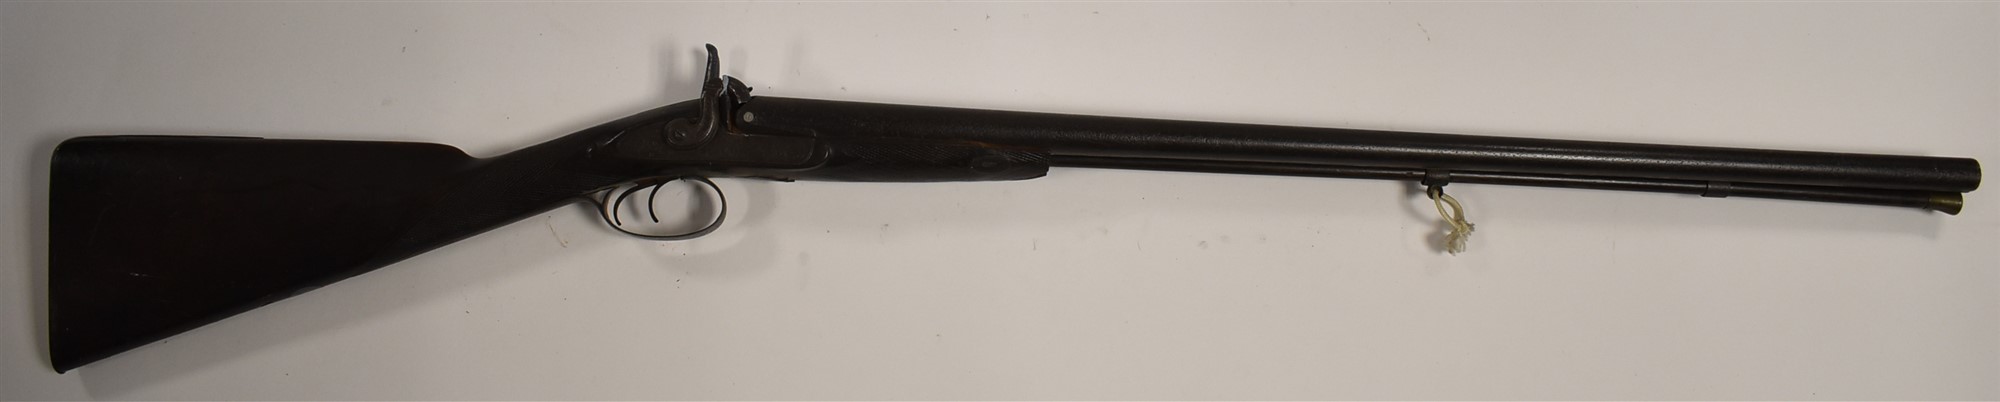 Charles Lancaster sporting gun